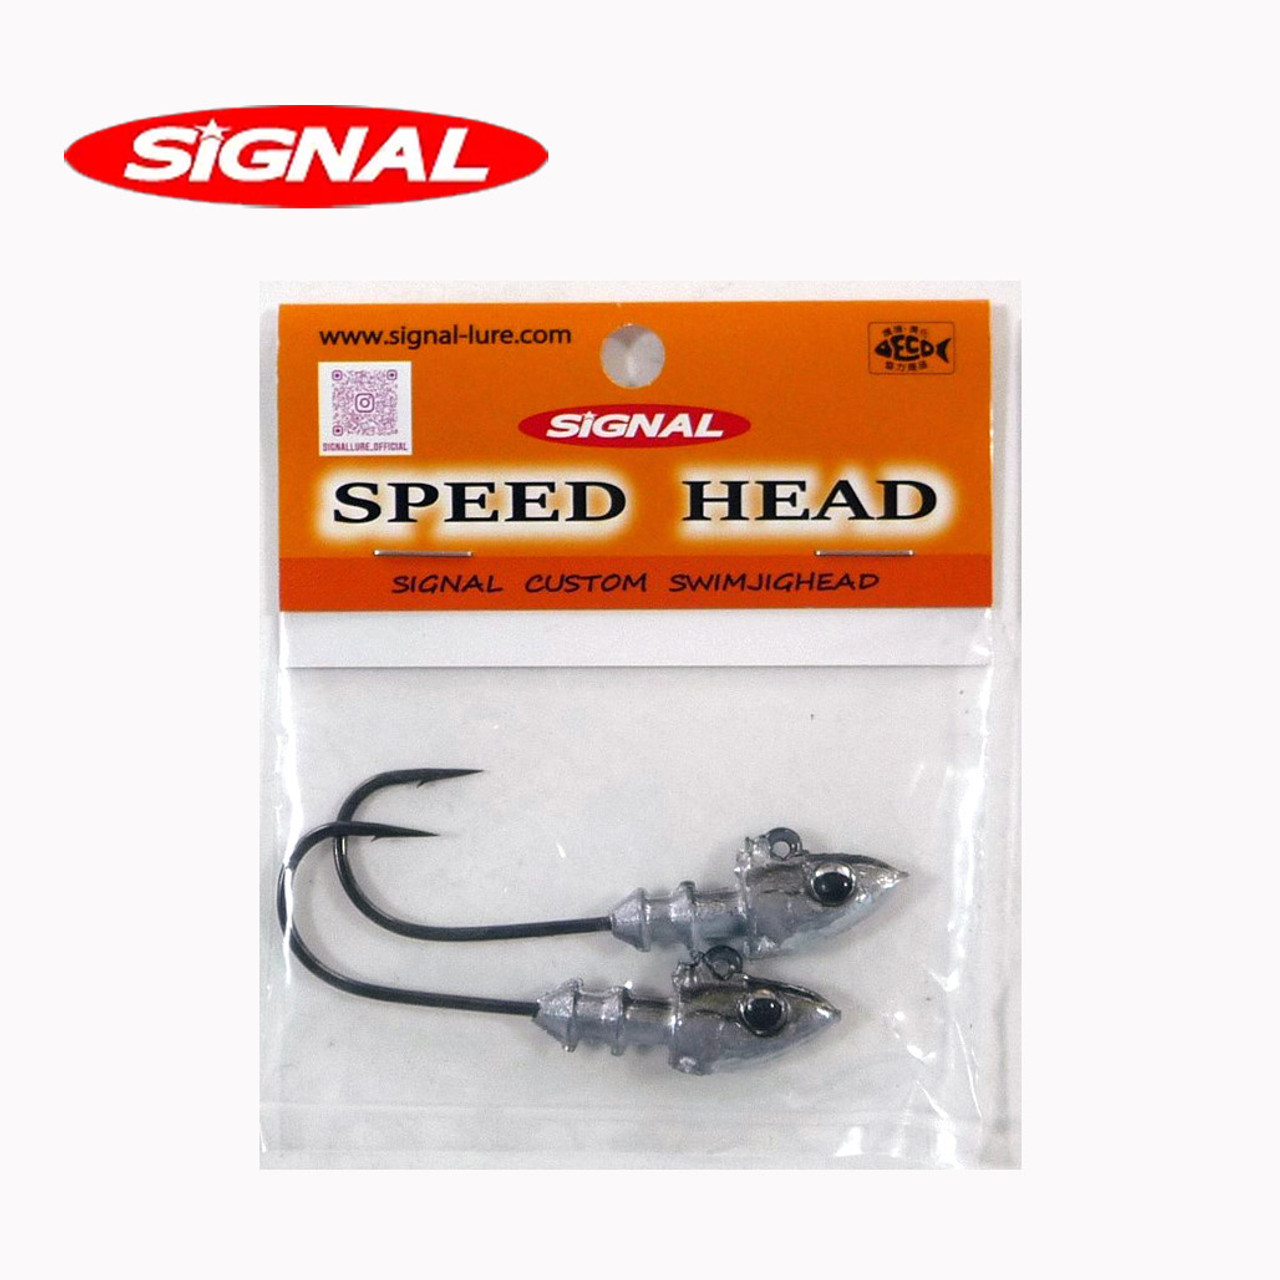 Signal SPEED HEAD NEW